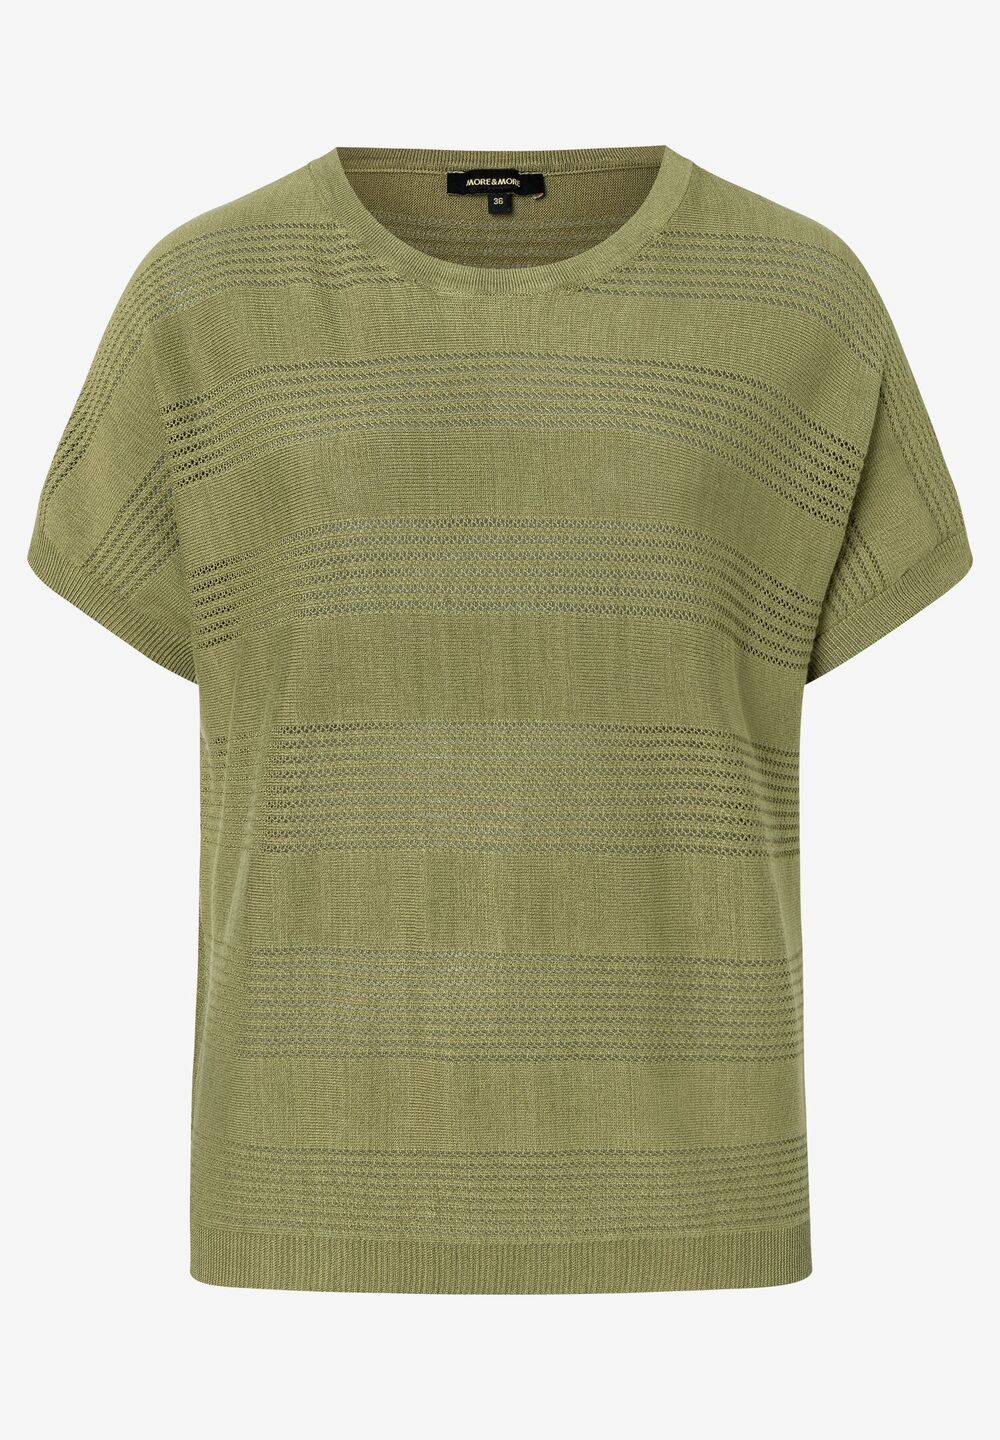 leichter Pullover, fresh green, Sommer-Kollektion, gruen Detailansicht 1